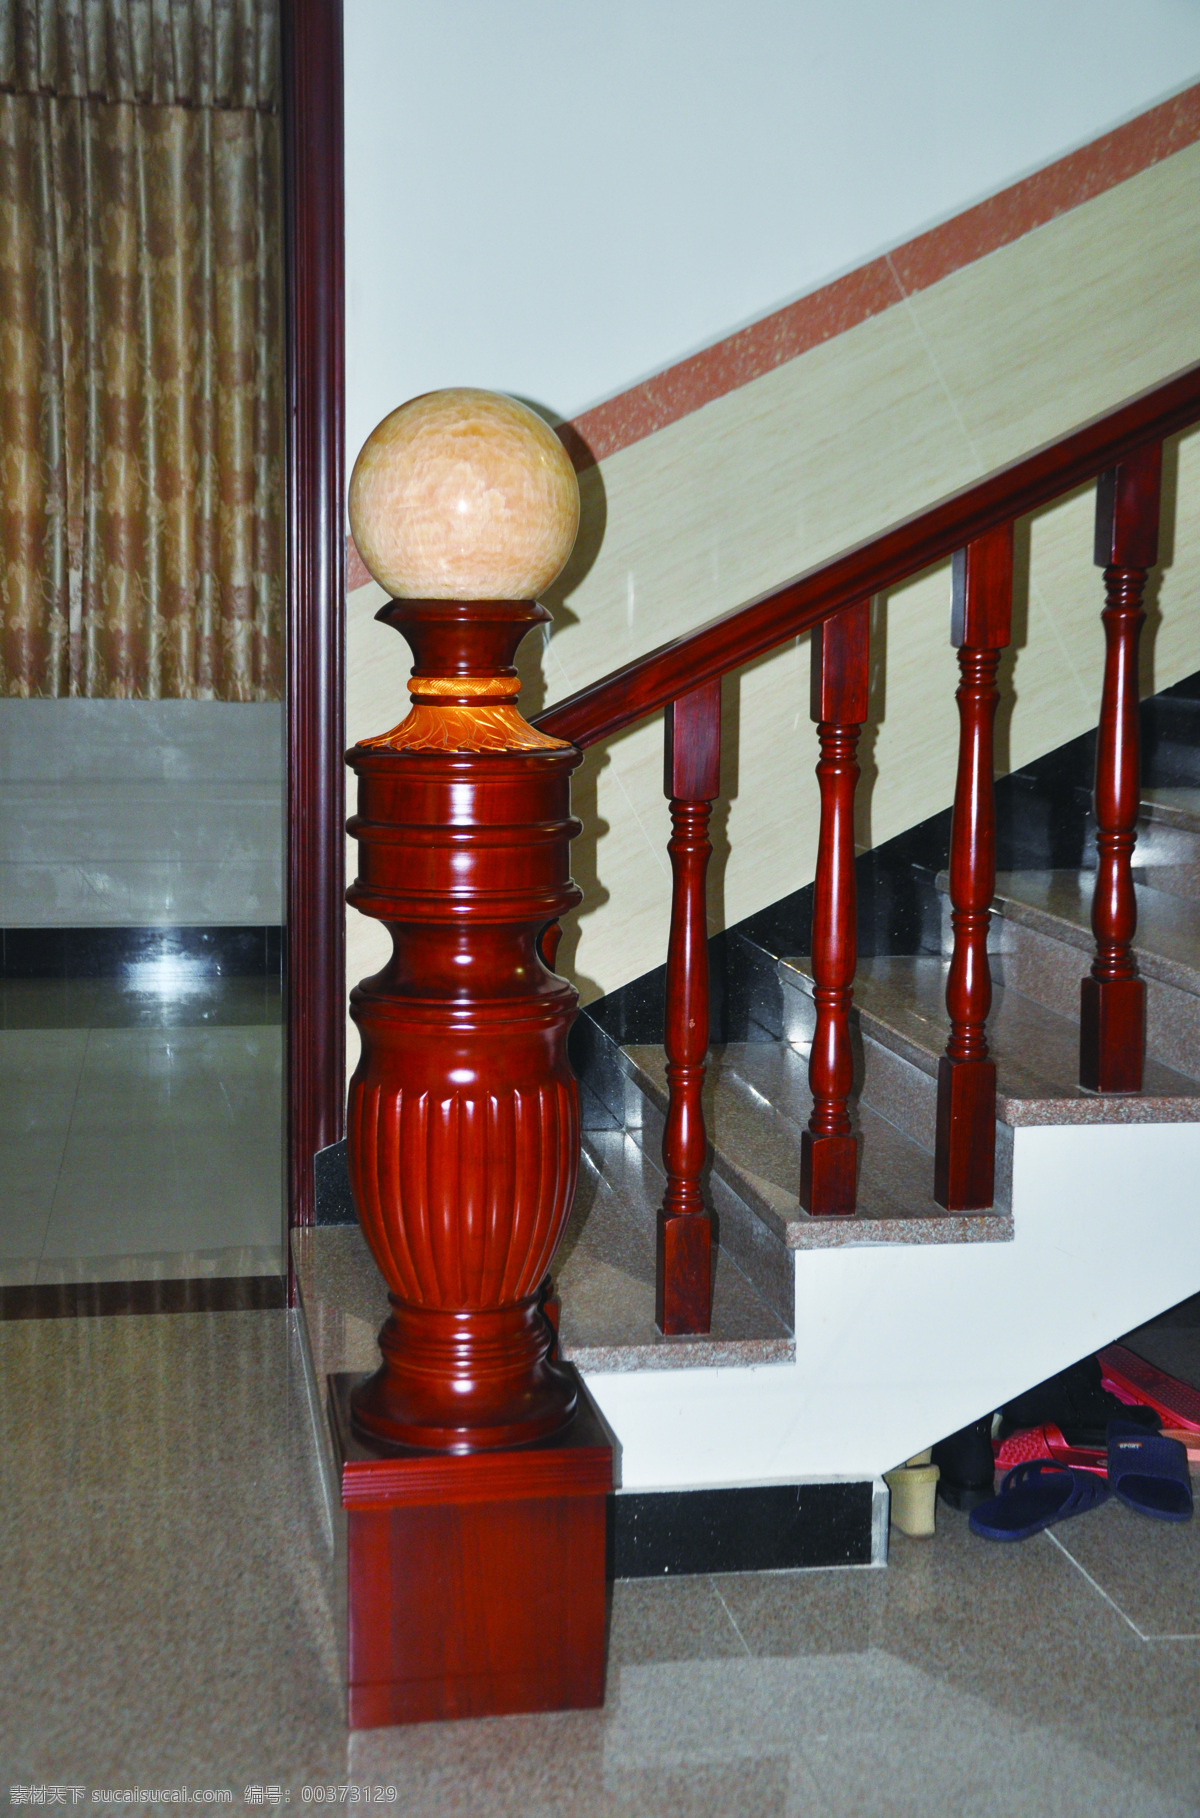 楼梯扶手 楼梯 扶手 红木 大理石扶手 定制楼梯 红木楼梯 文化艺术 传统文化